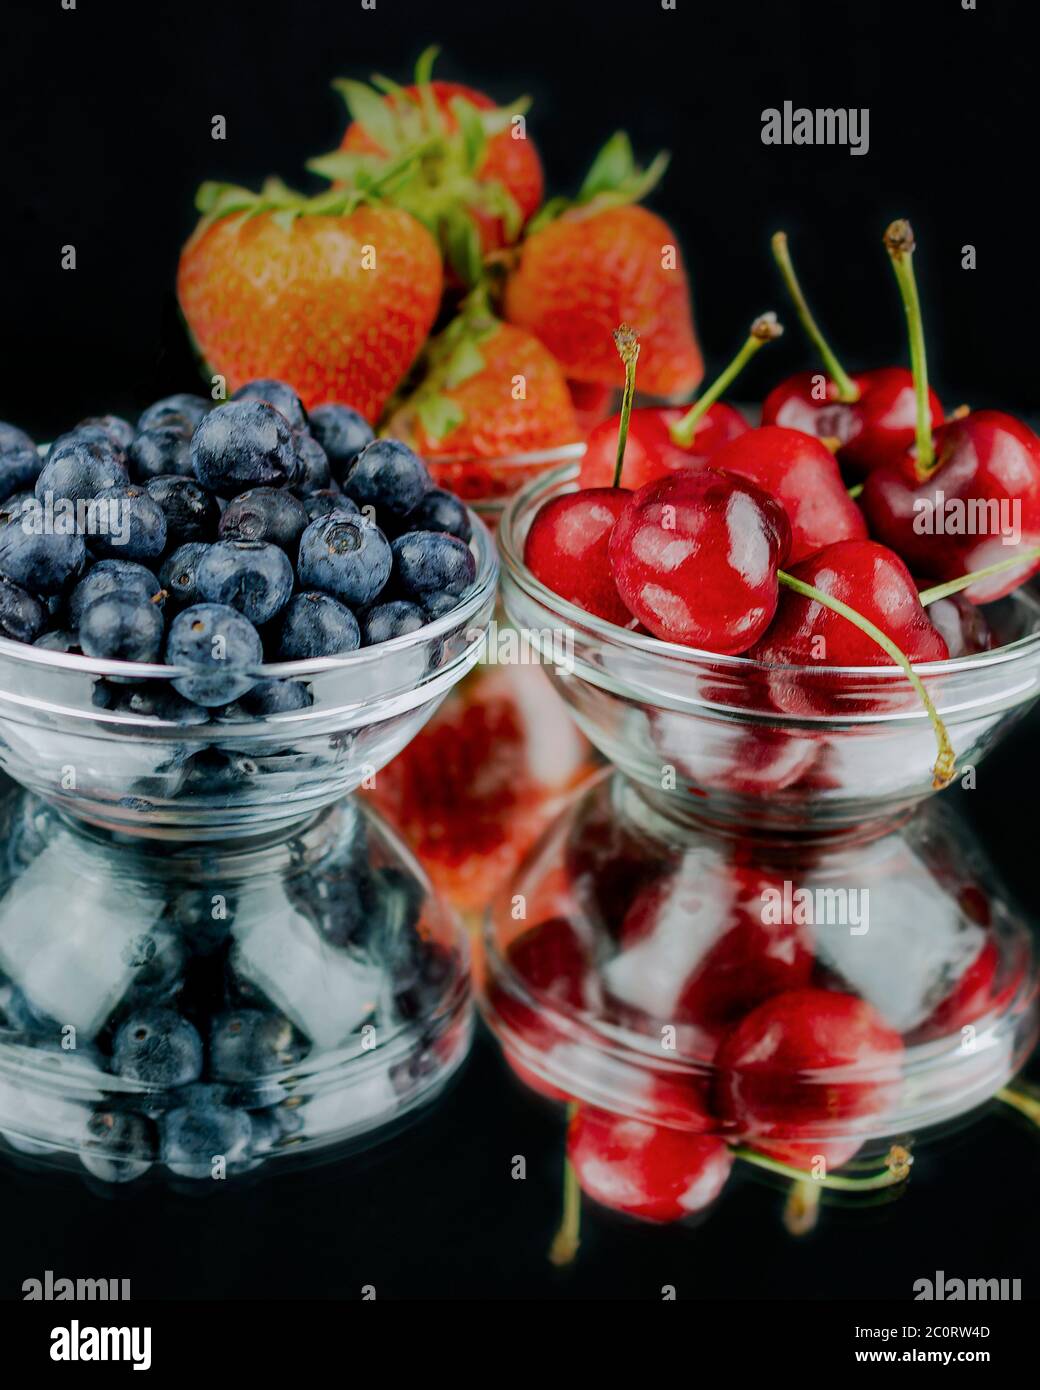 Trois bols en verre remplis de fraises, cerises et bleuets sur un miroir avec réflexion. Arrière-plan noir. Banque D'Images